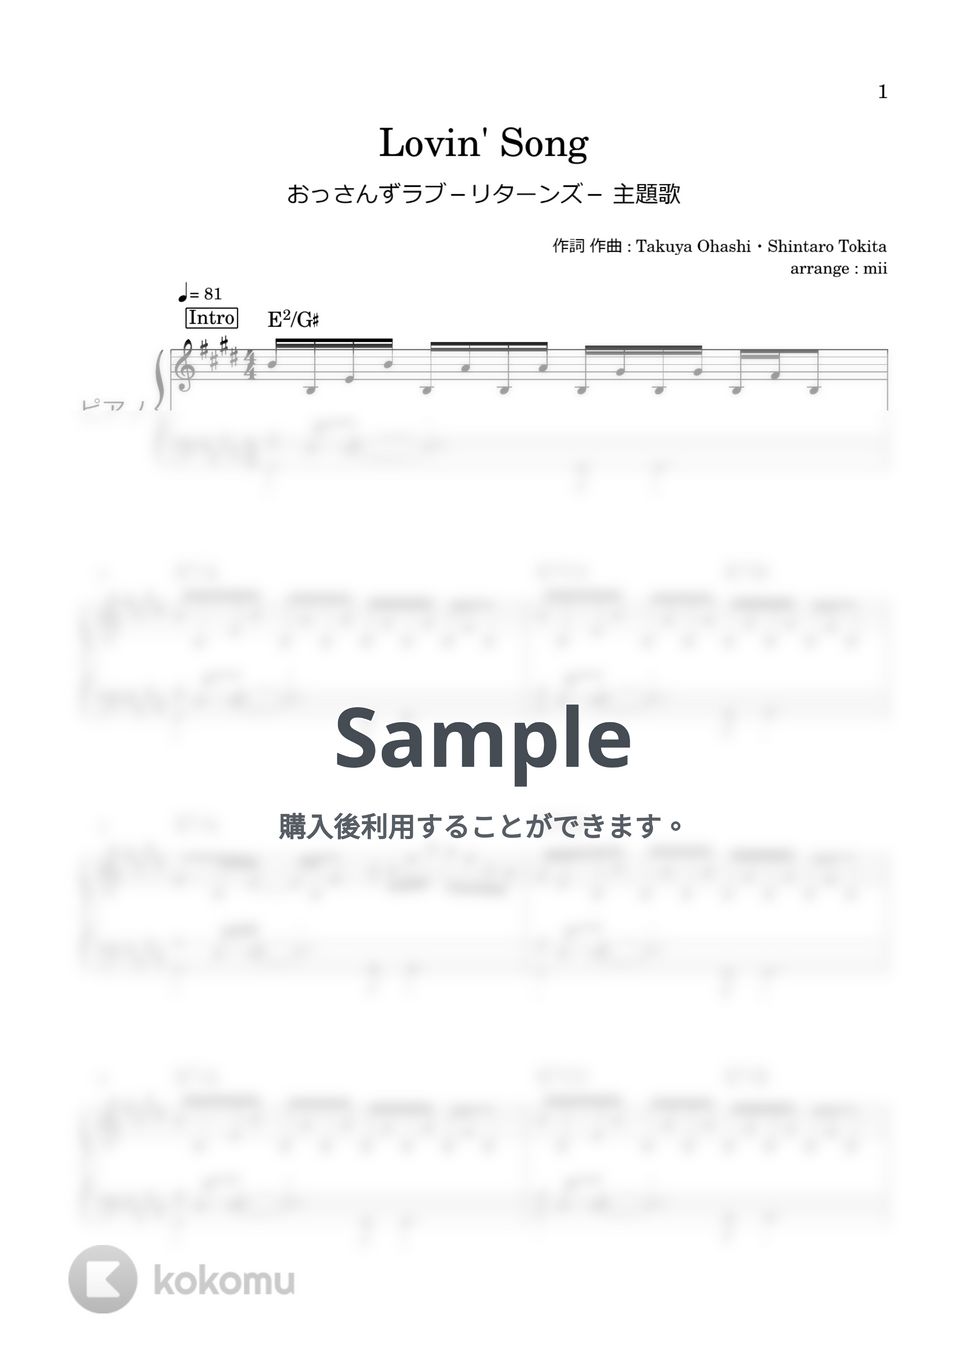 スキマスイッチ - Lovin' Song (おっさんずラブ₋リターンズ₋OP) by miiの楽譜棚